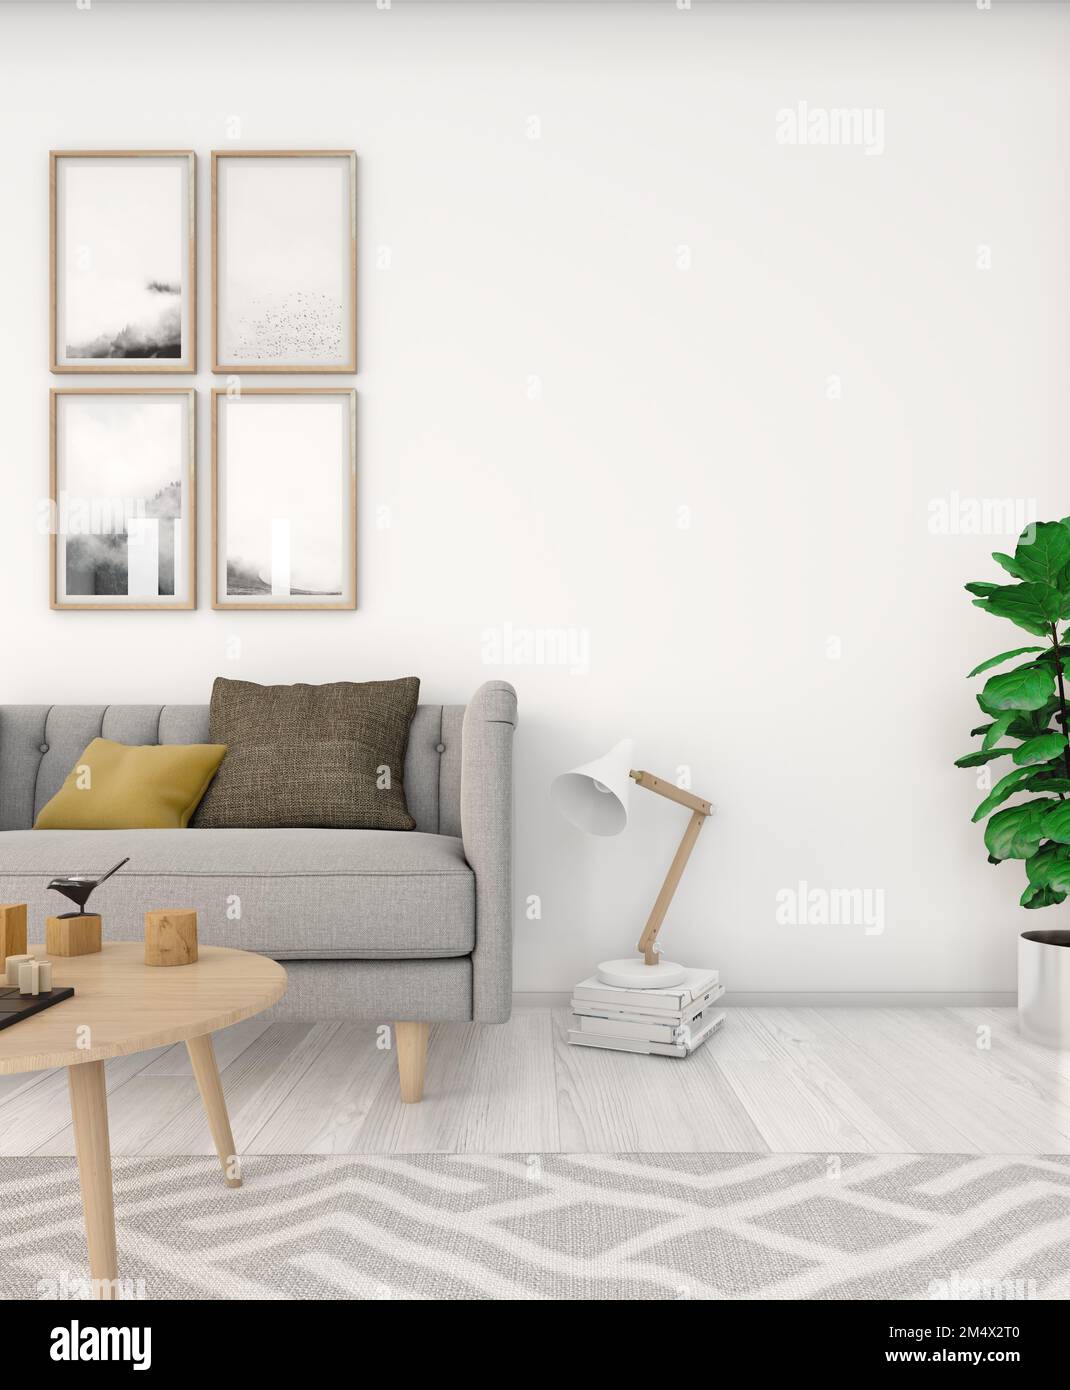 Innenansicht eines gemütlichen wohnzimmers im nordischen Stil. Weißer Holzfußboden, grauer Teppich, hängende Bilder mit Schwarz-Weiß-Fotos an der Wand im Bac Stockfoto